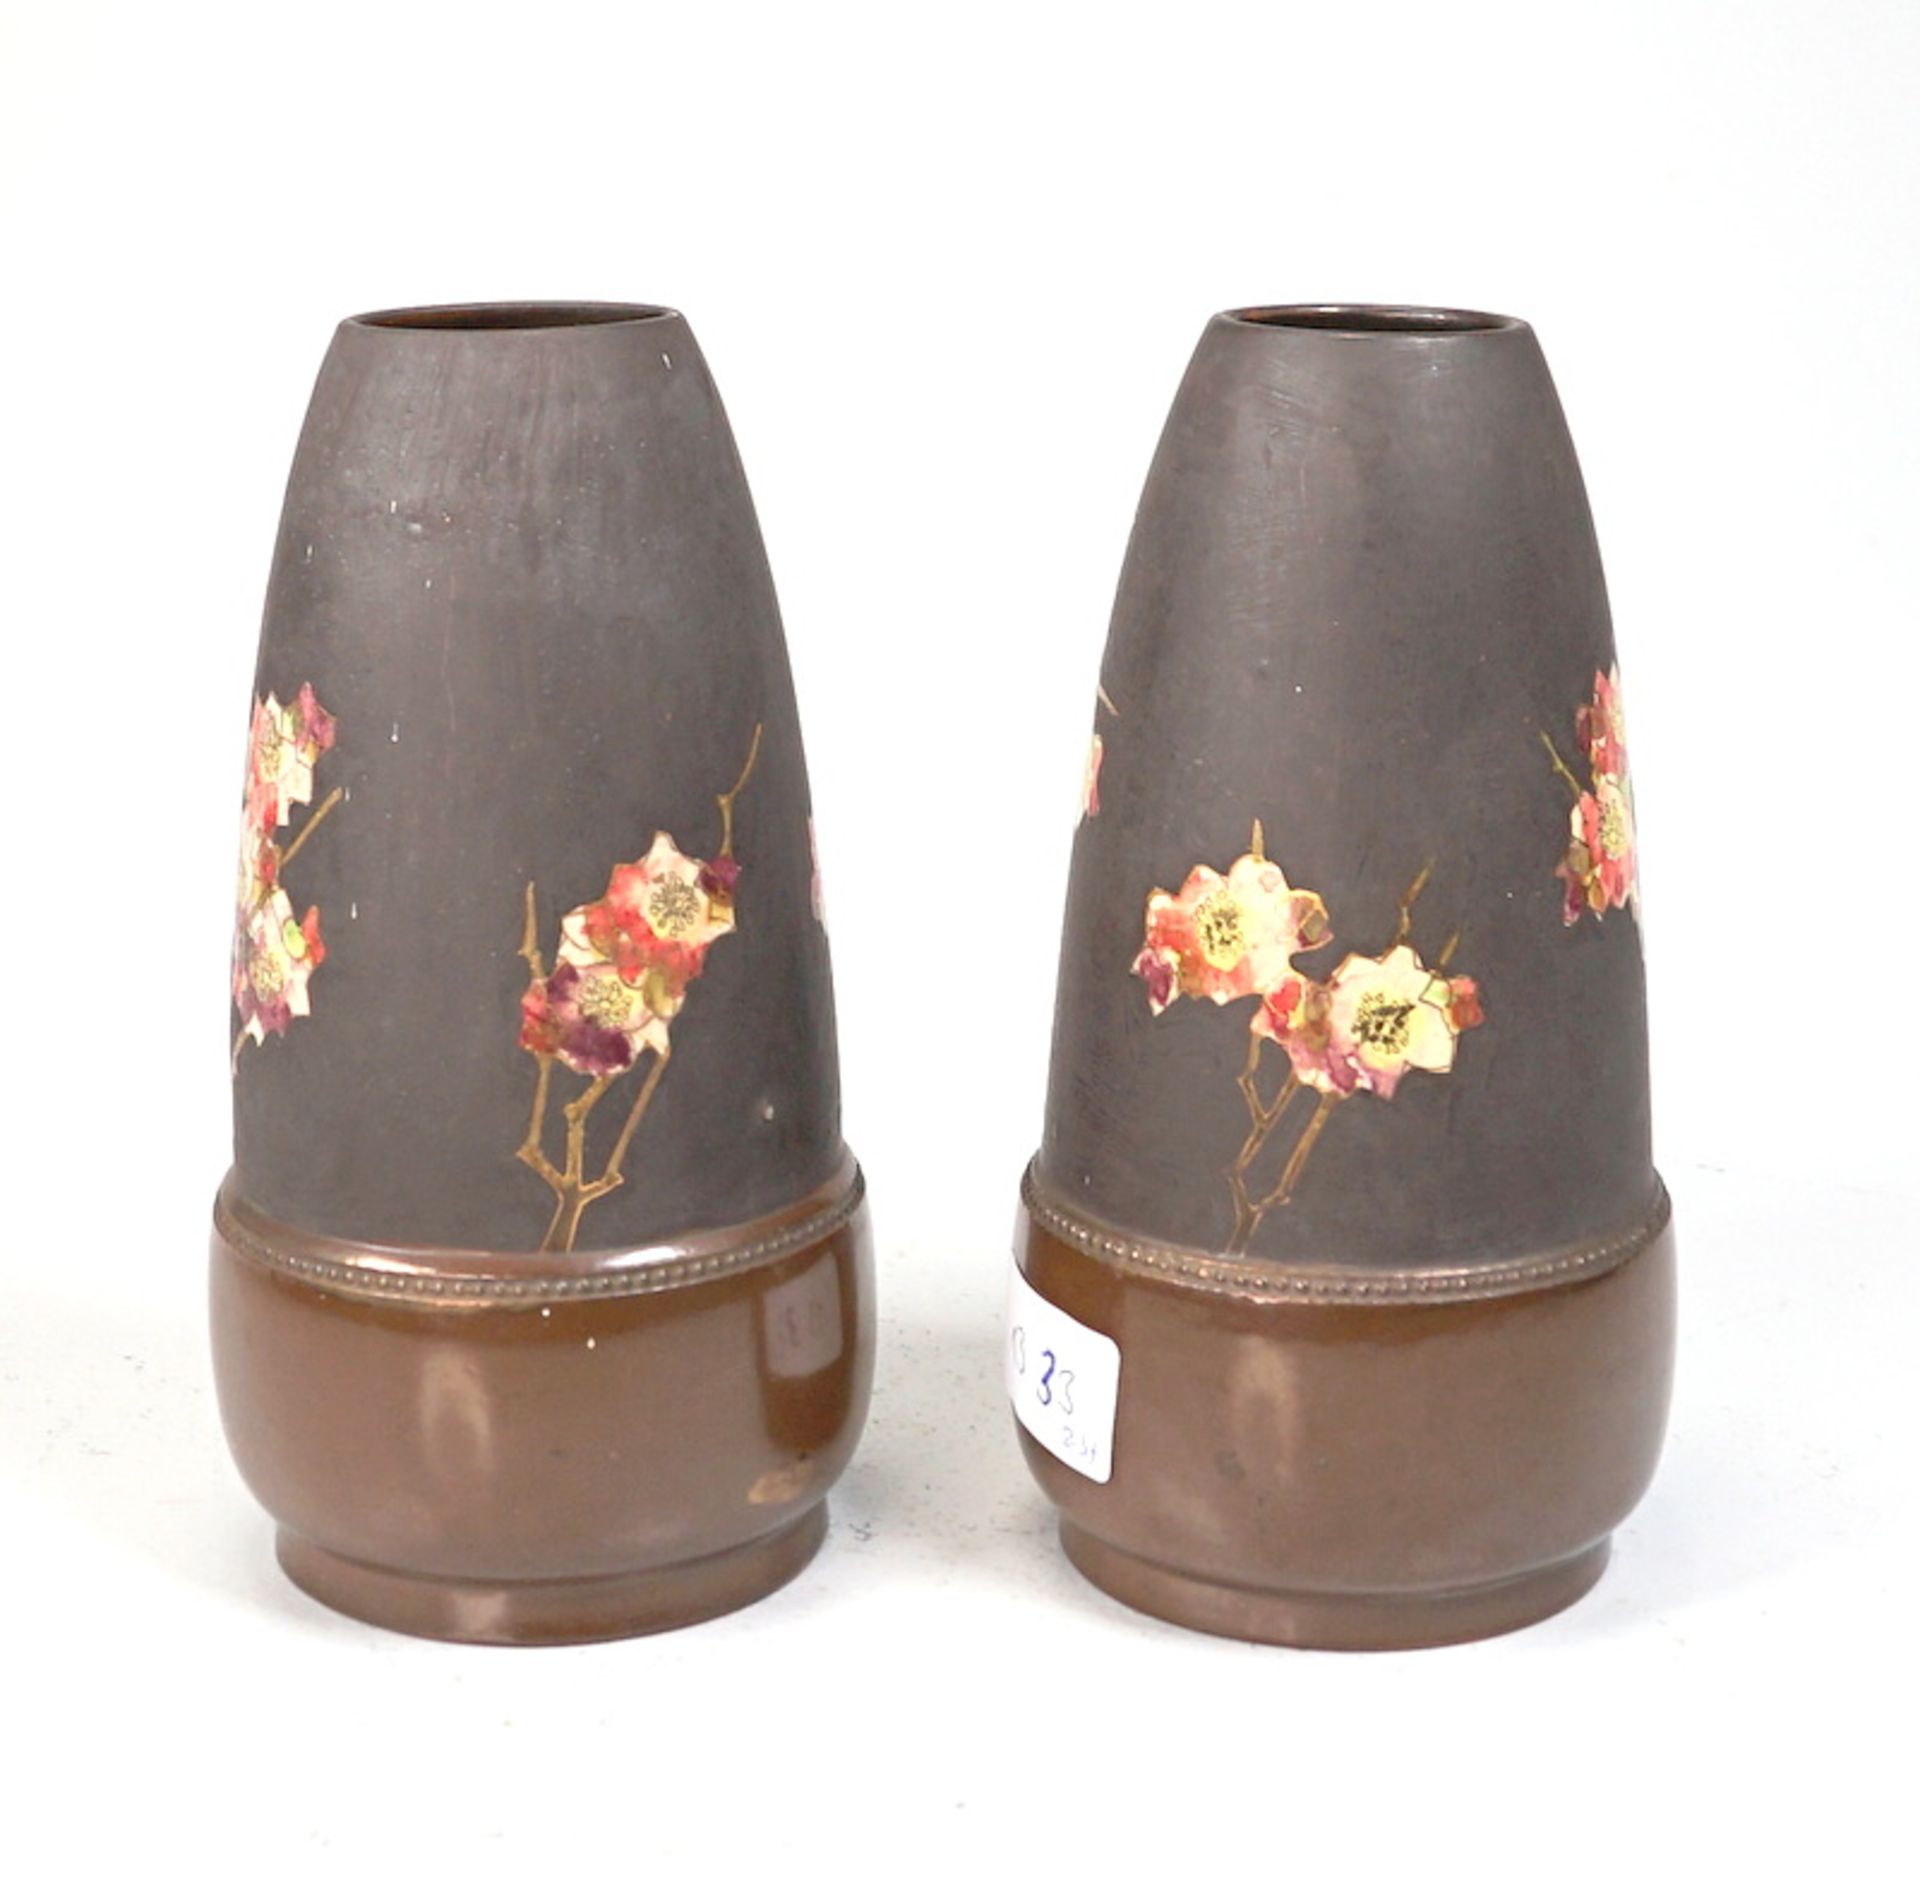 Bretby Art Pottery: Pärchen Vasen mit asiatischem Blumen und Vögeldekor - Image 2 of 3